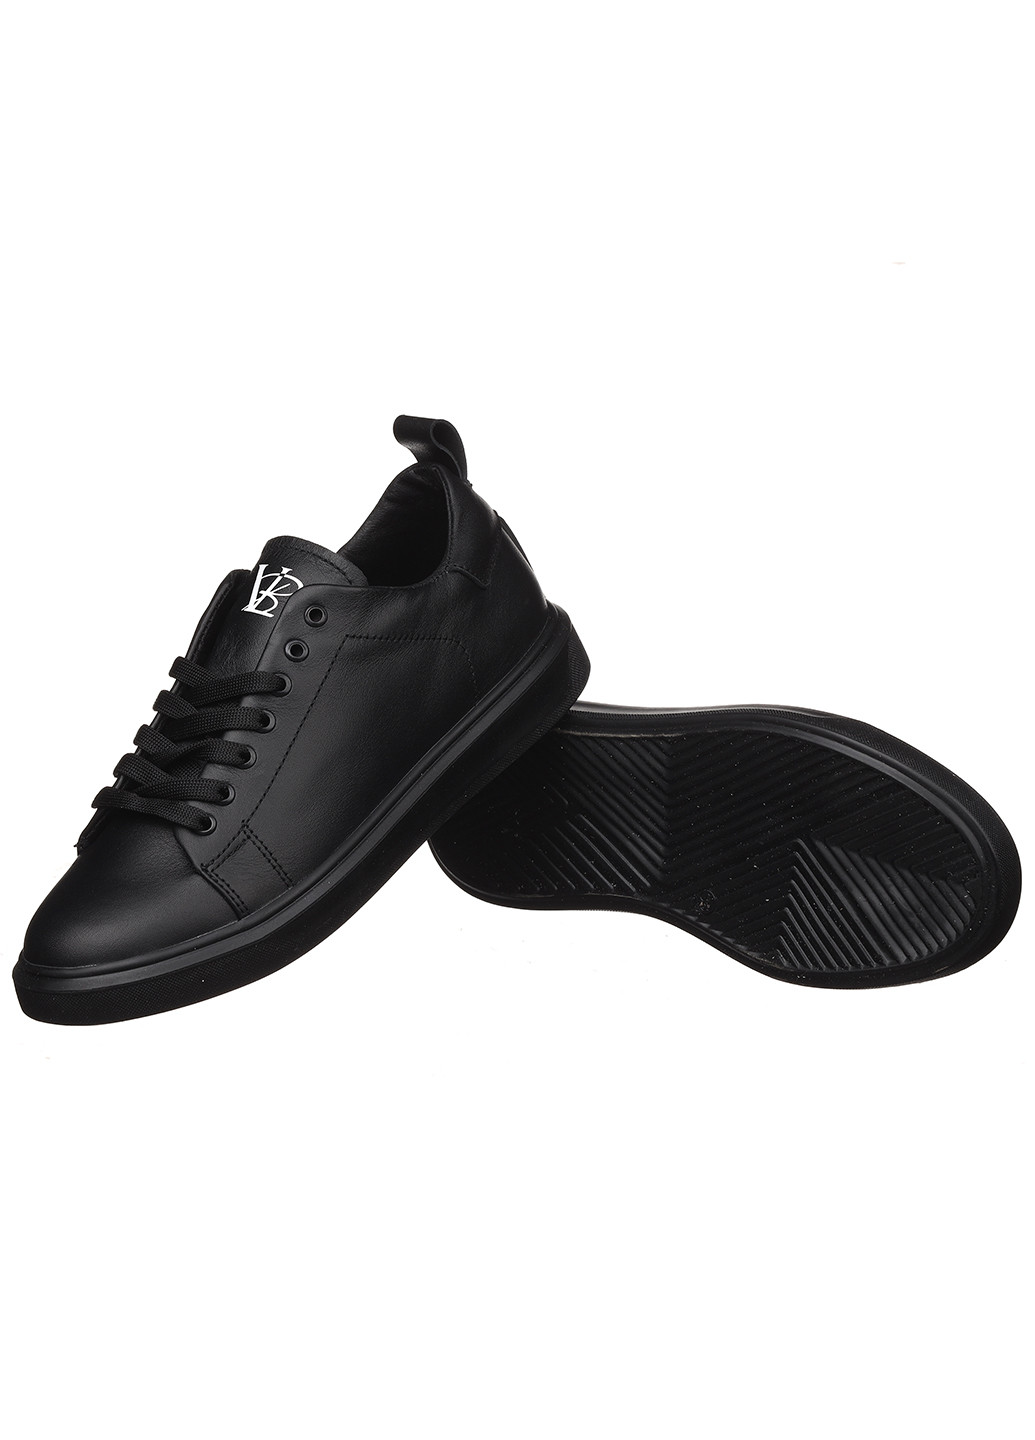 Черные демисезонные женские кроссовки кж52.1-01 Best Vak